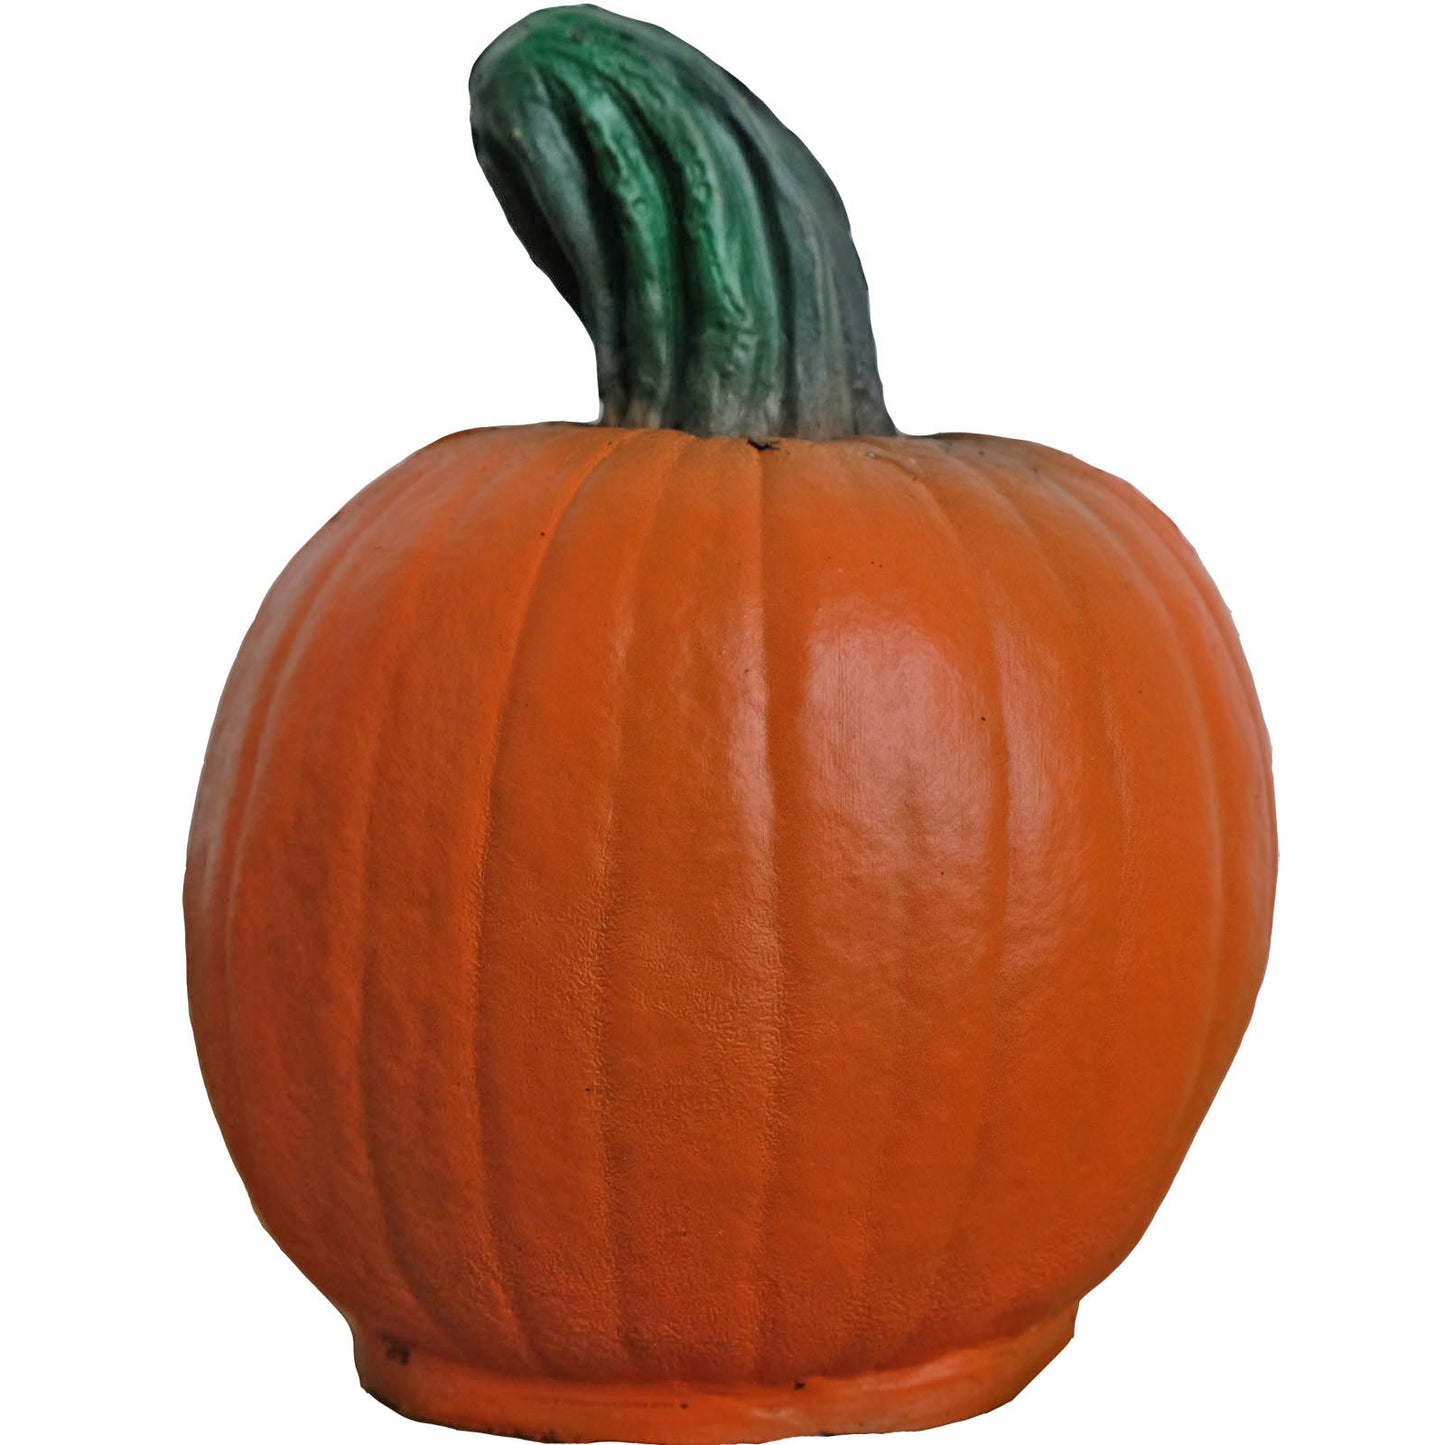 100322 Leitold Pumpkin